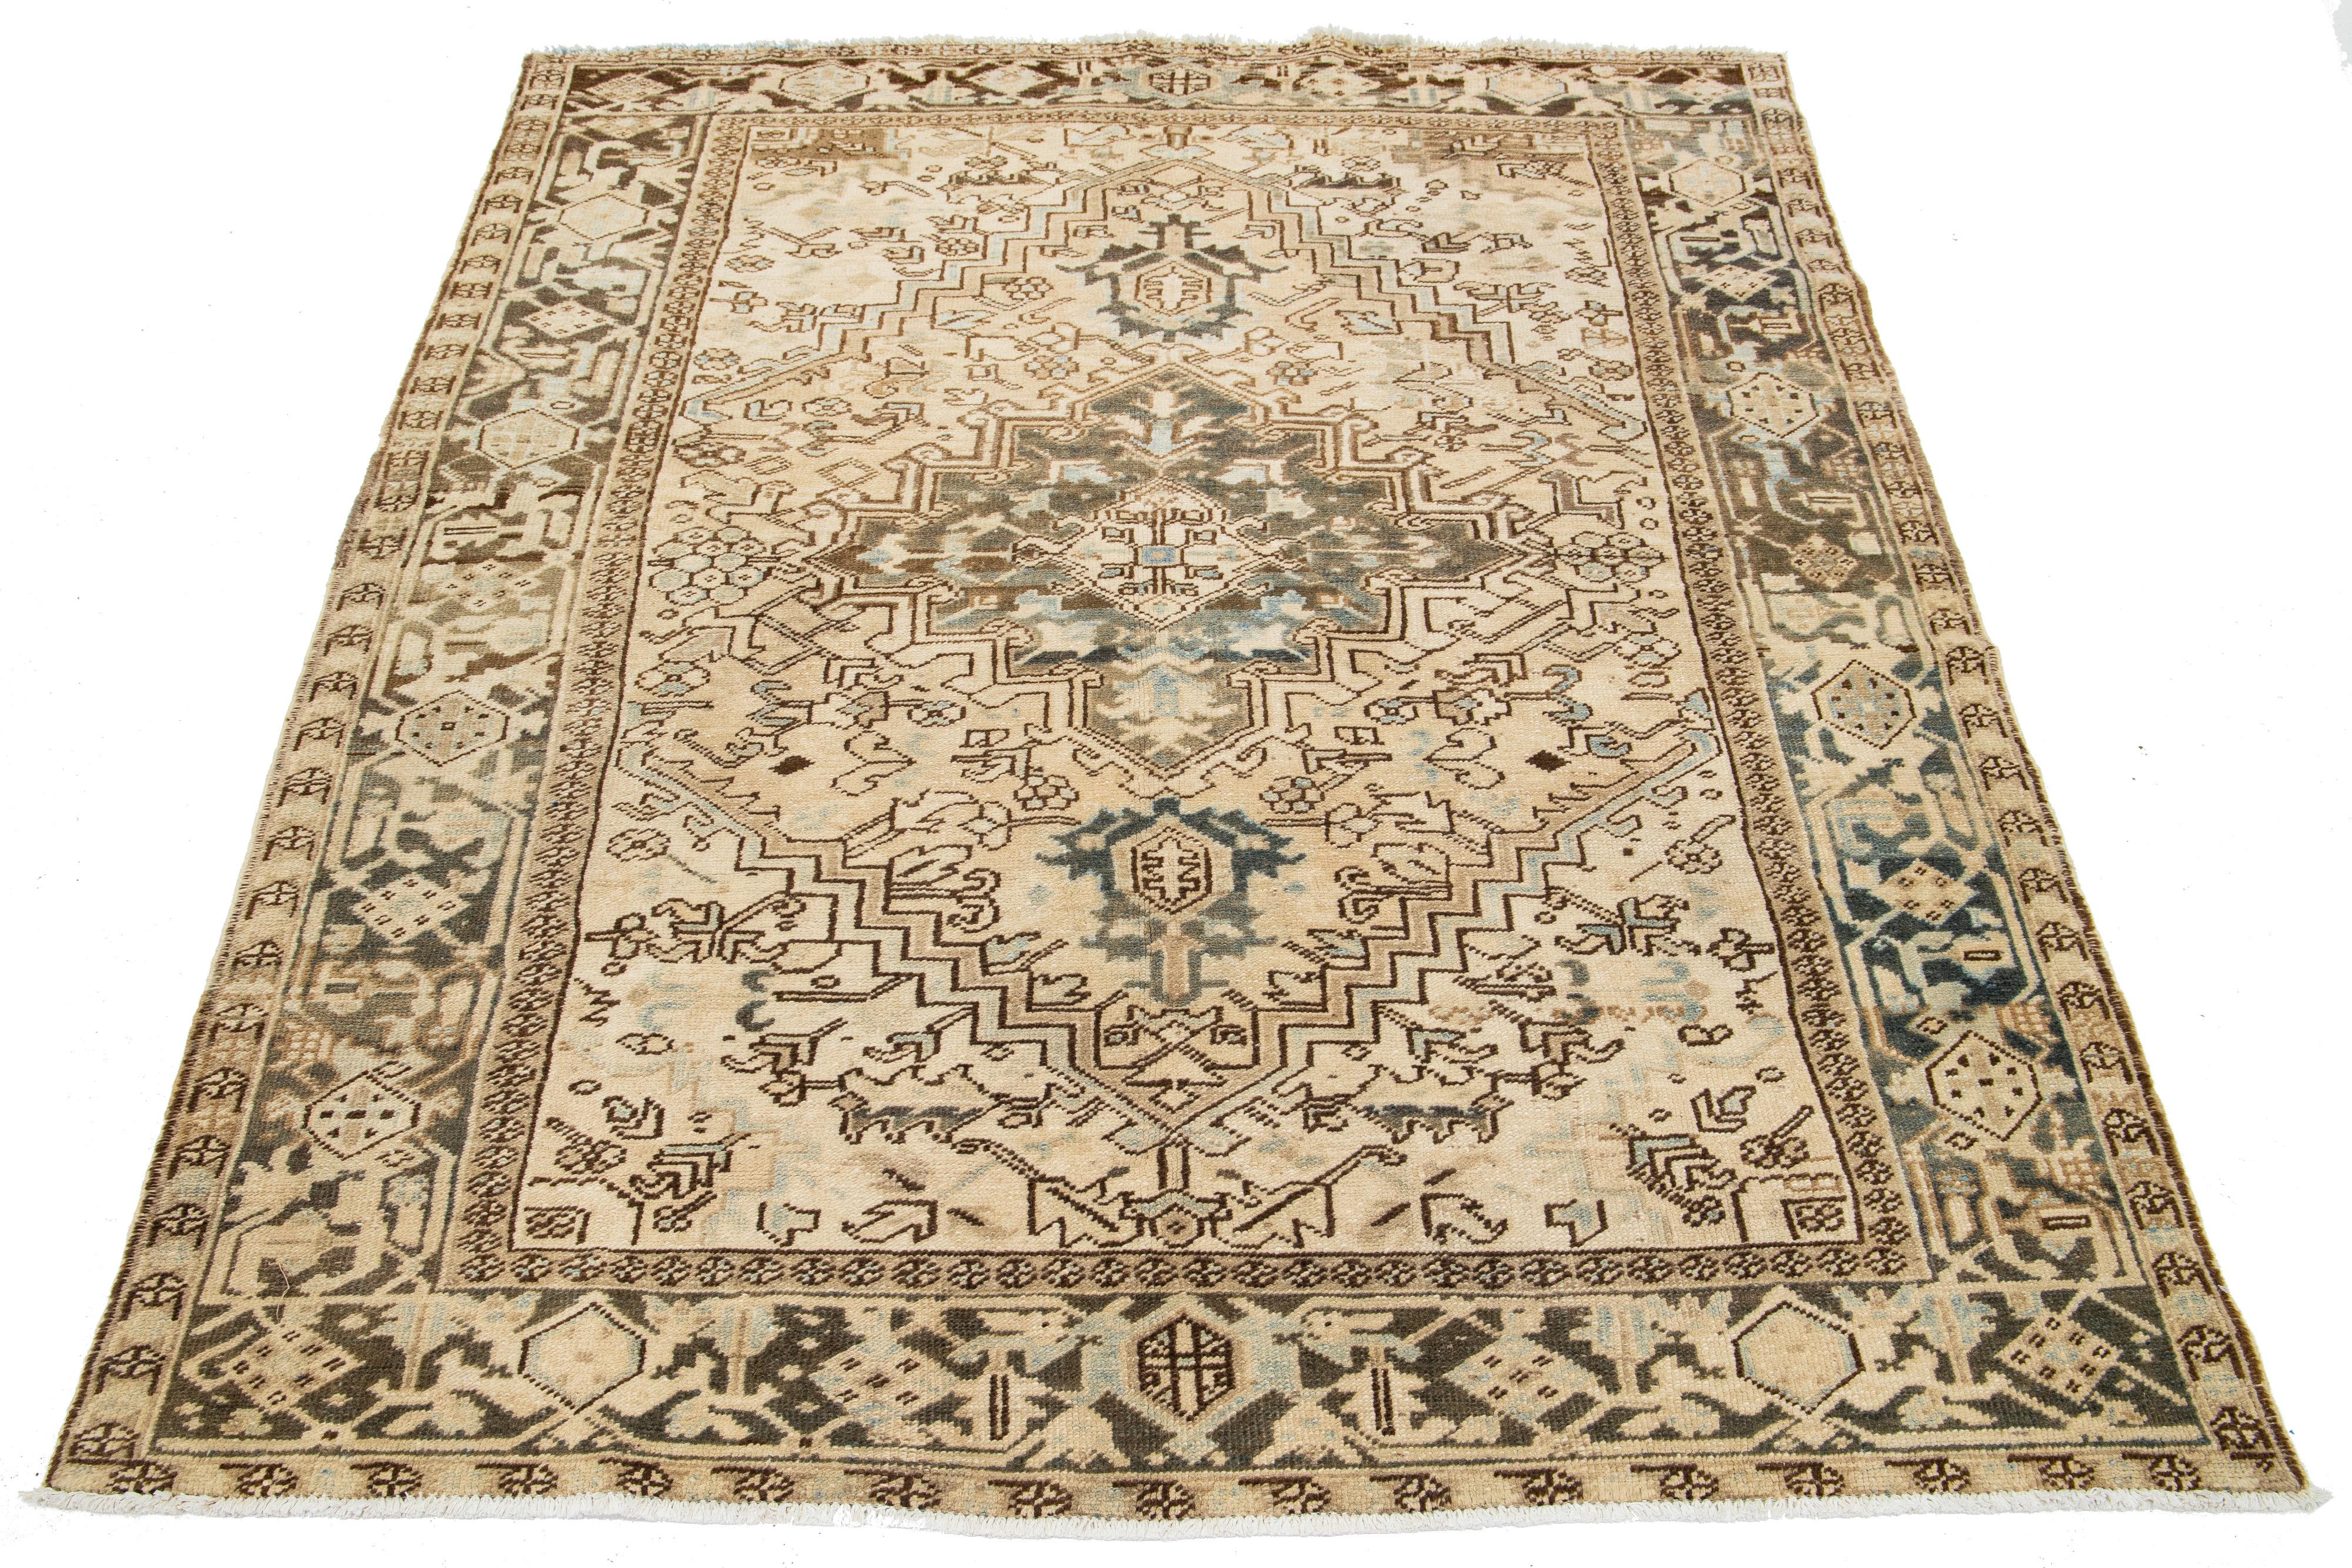 Ein handgeknüpfter antiker persischer Heriz-Teppich aus Wolle mit einem blauen und braunen Allover-Muster auf einem beigen Feld.

Dieser Teppich misst 6'5' x 8'6